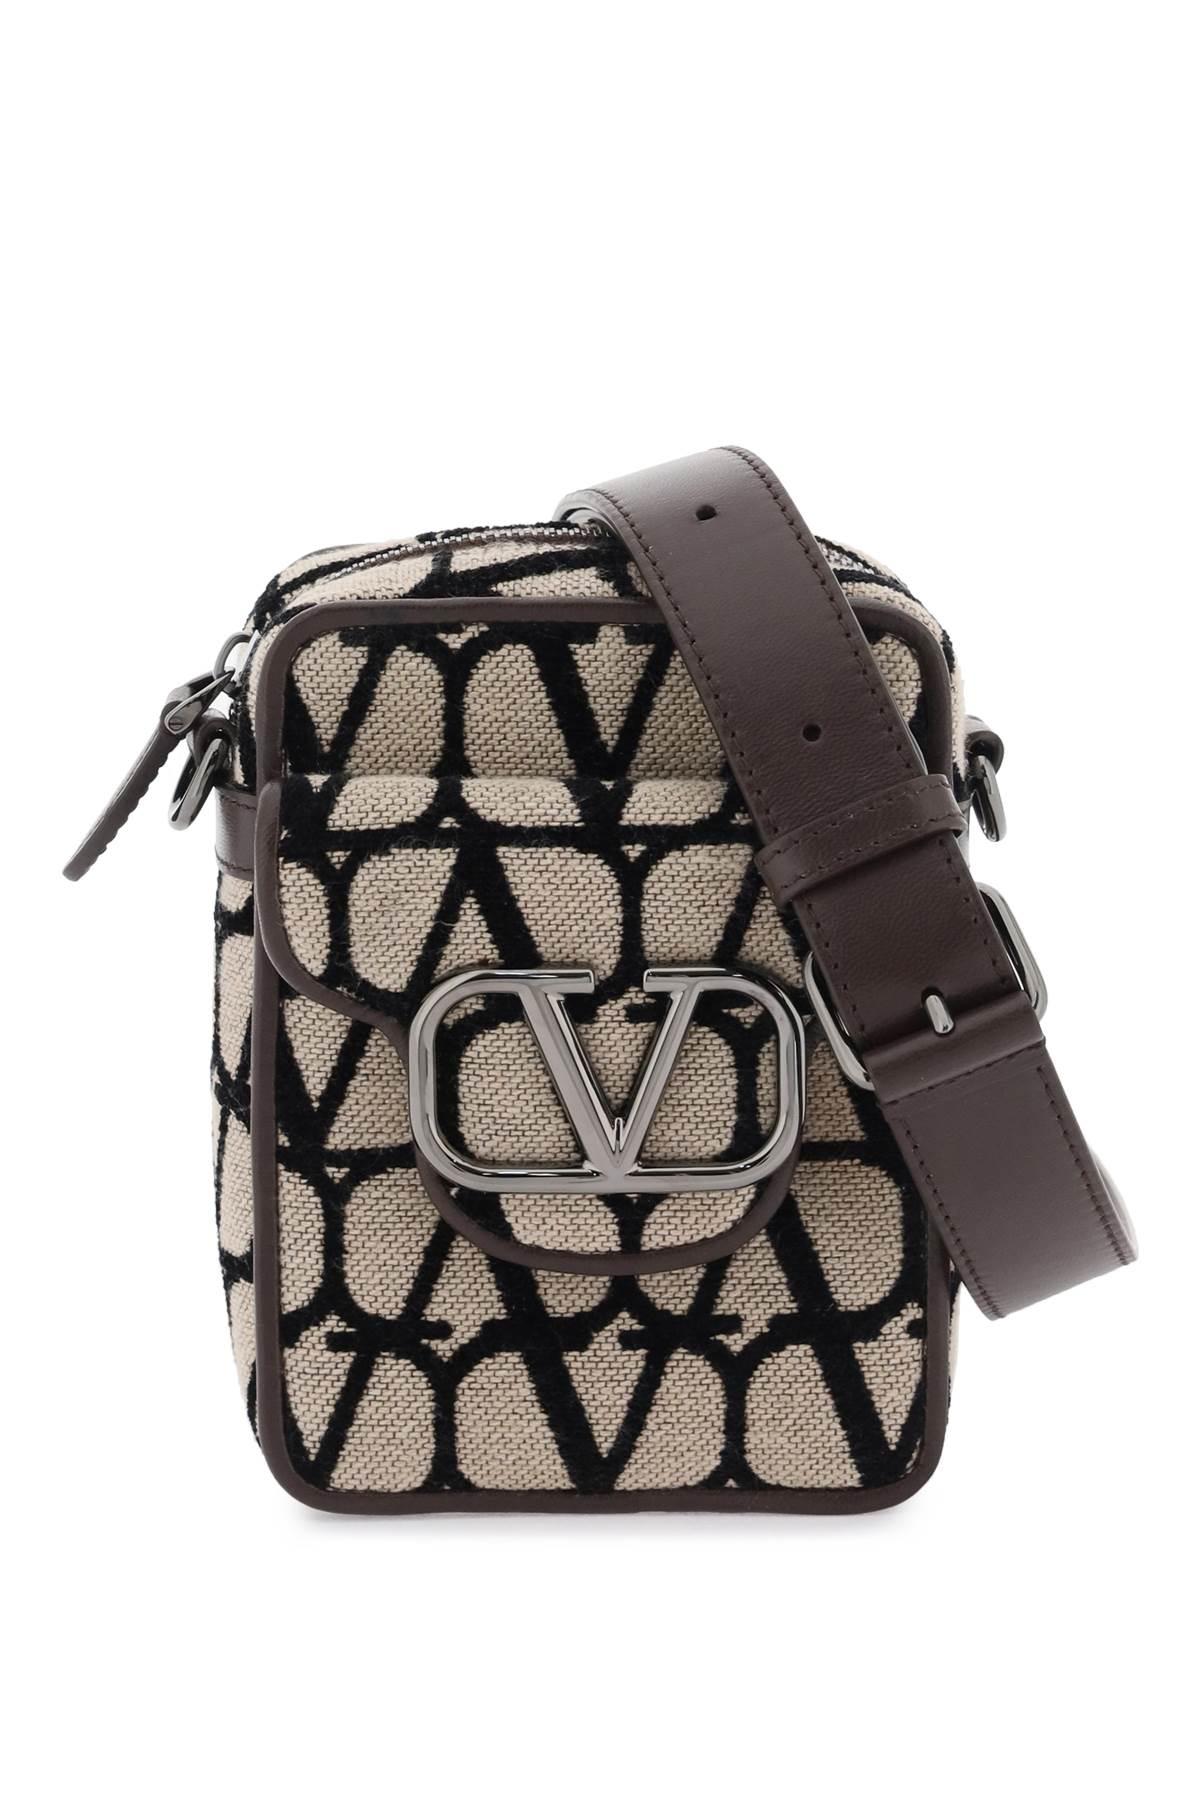 Cross body bags Valentino Garavani - Small Vsling shoulder bag in